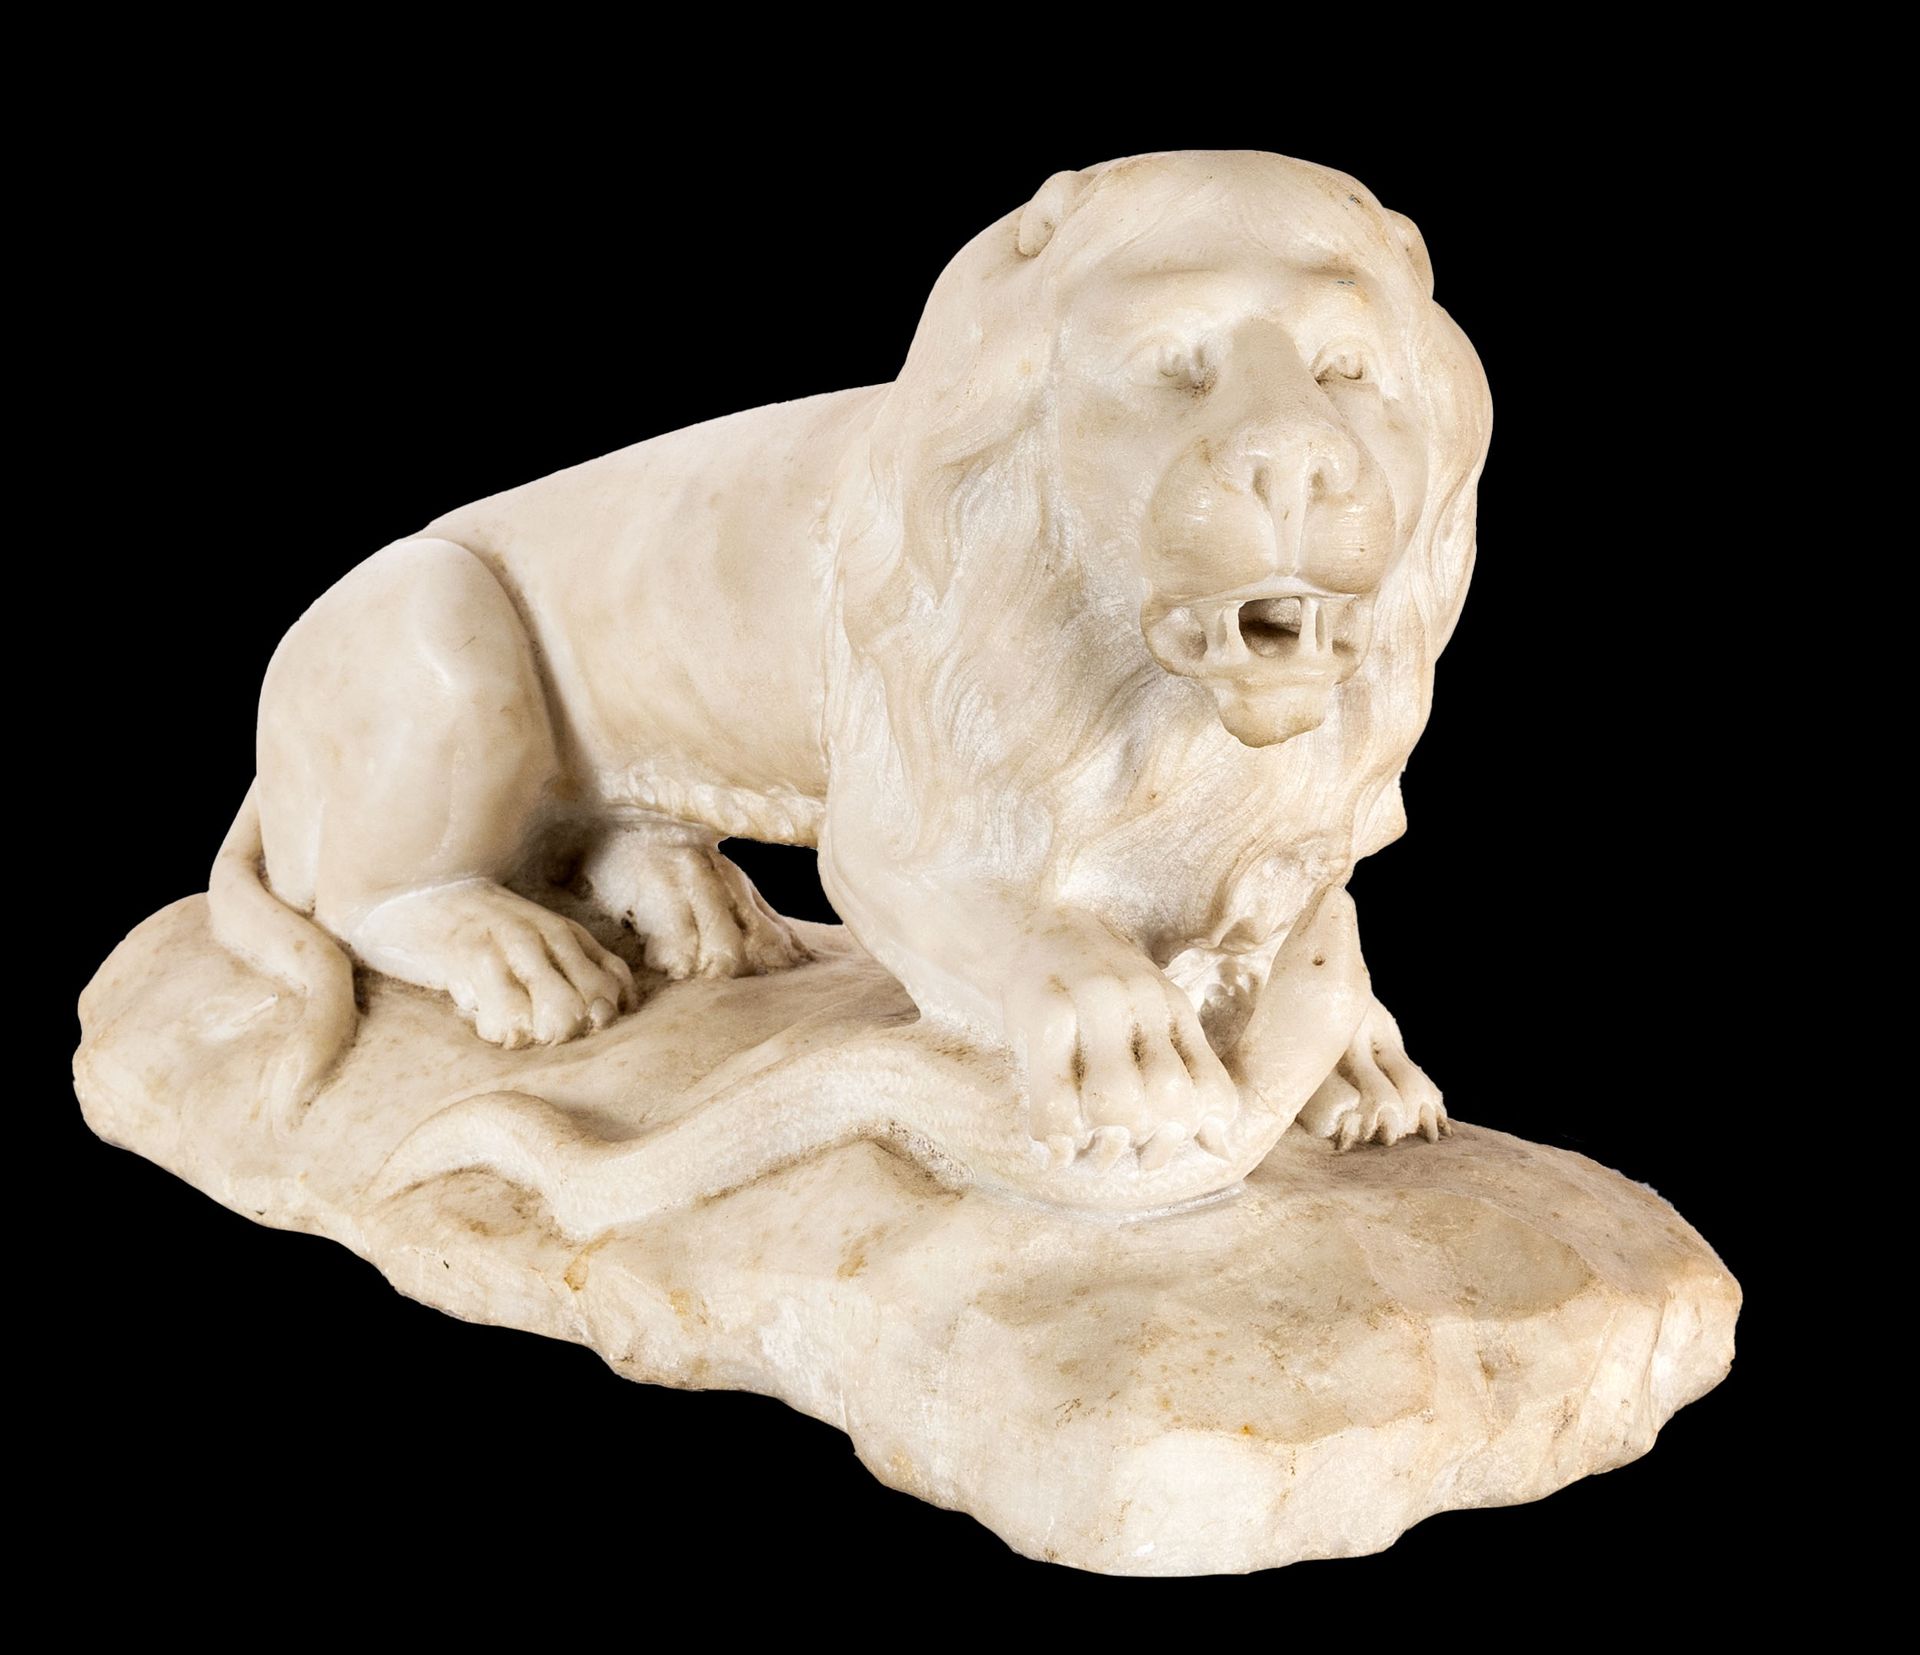 Null Bildhauer aus dem 19. Jahrhundert - Der kauernde Löwe

Skulptur aus Marmor
&hellip;